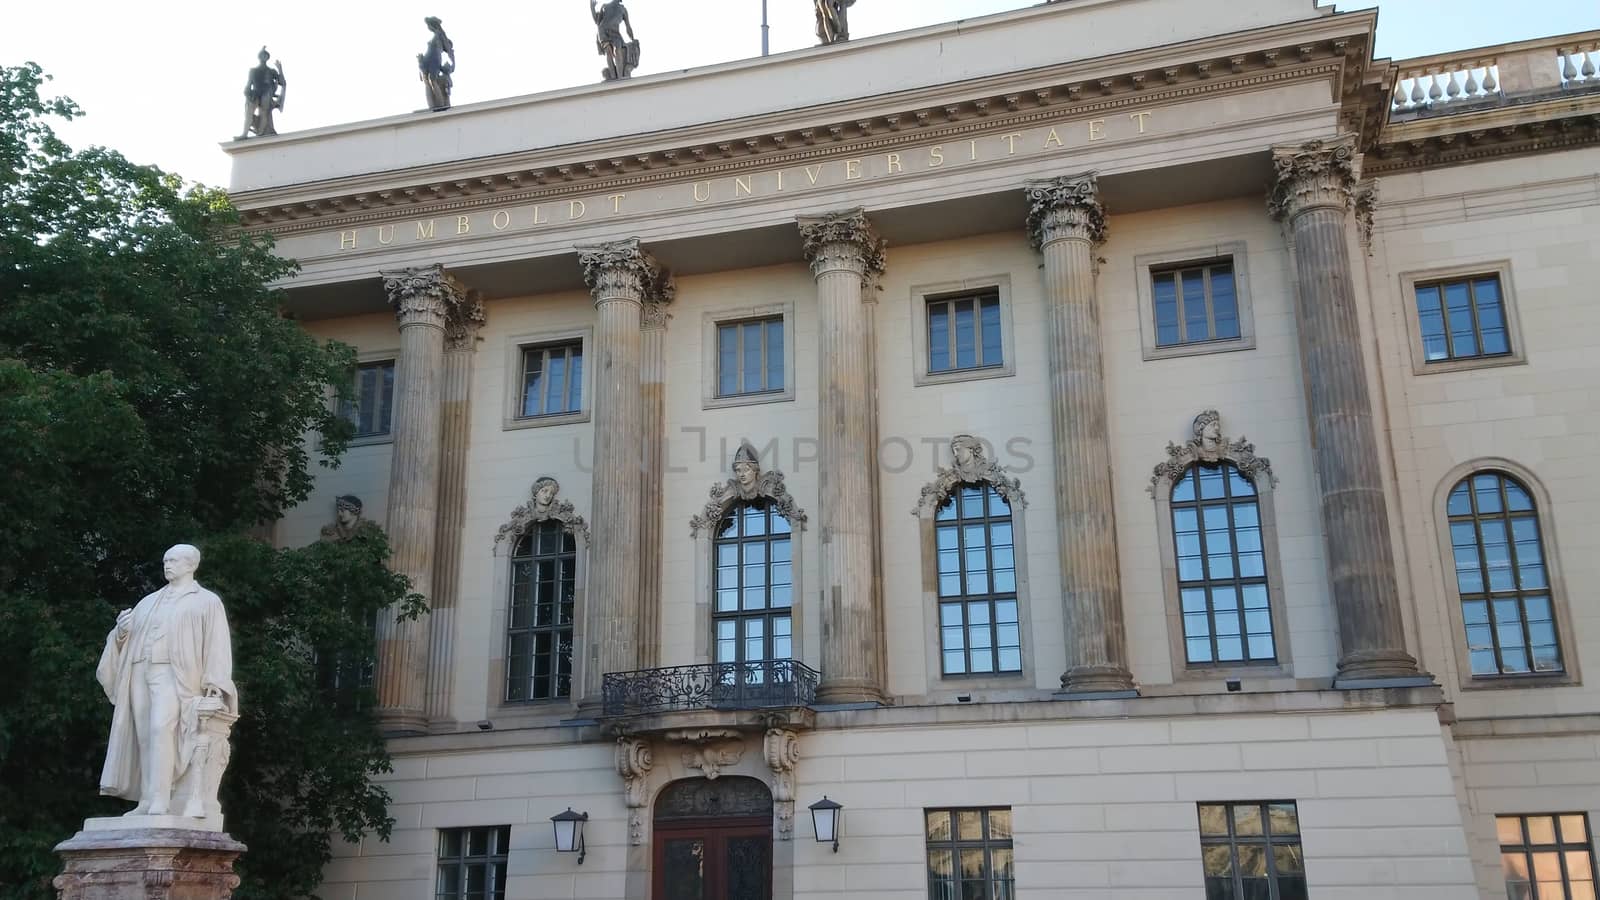 Famous Humboldt University in Berlin